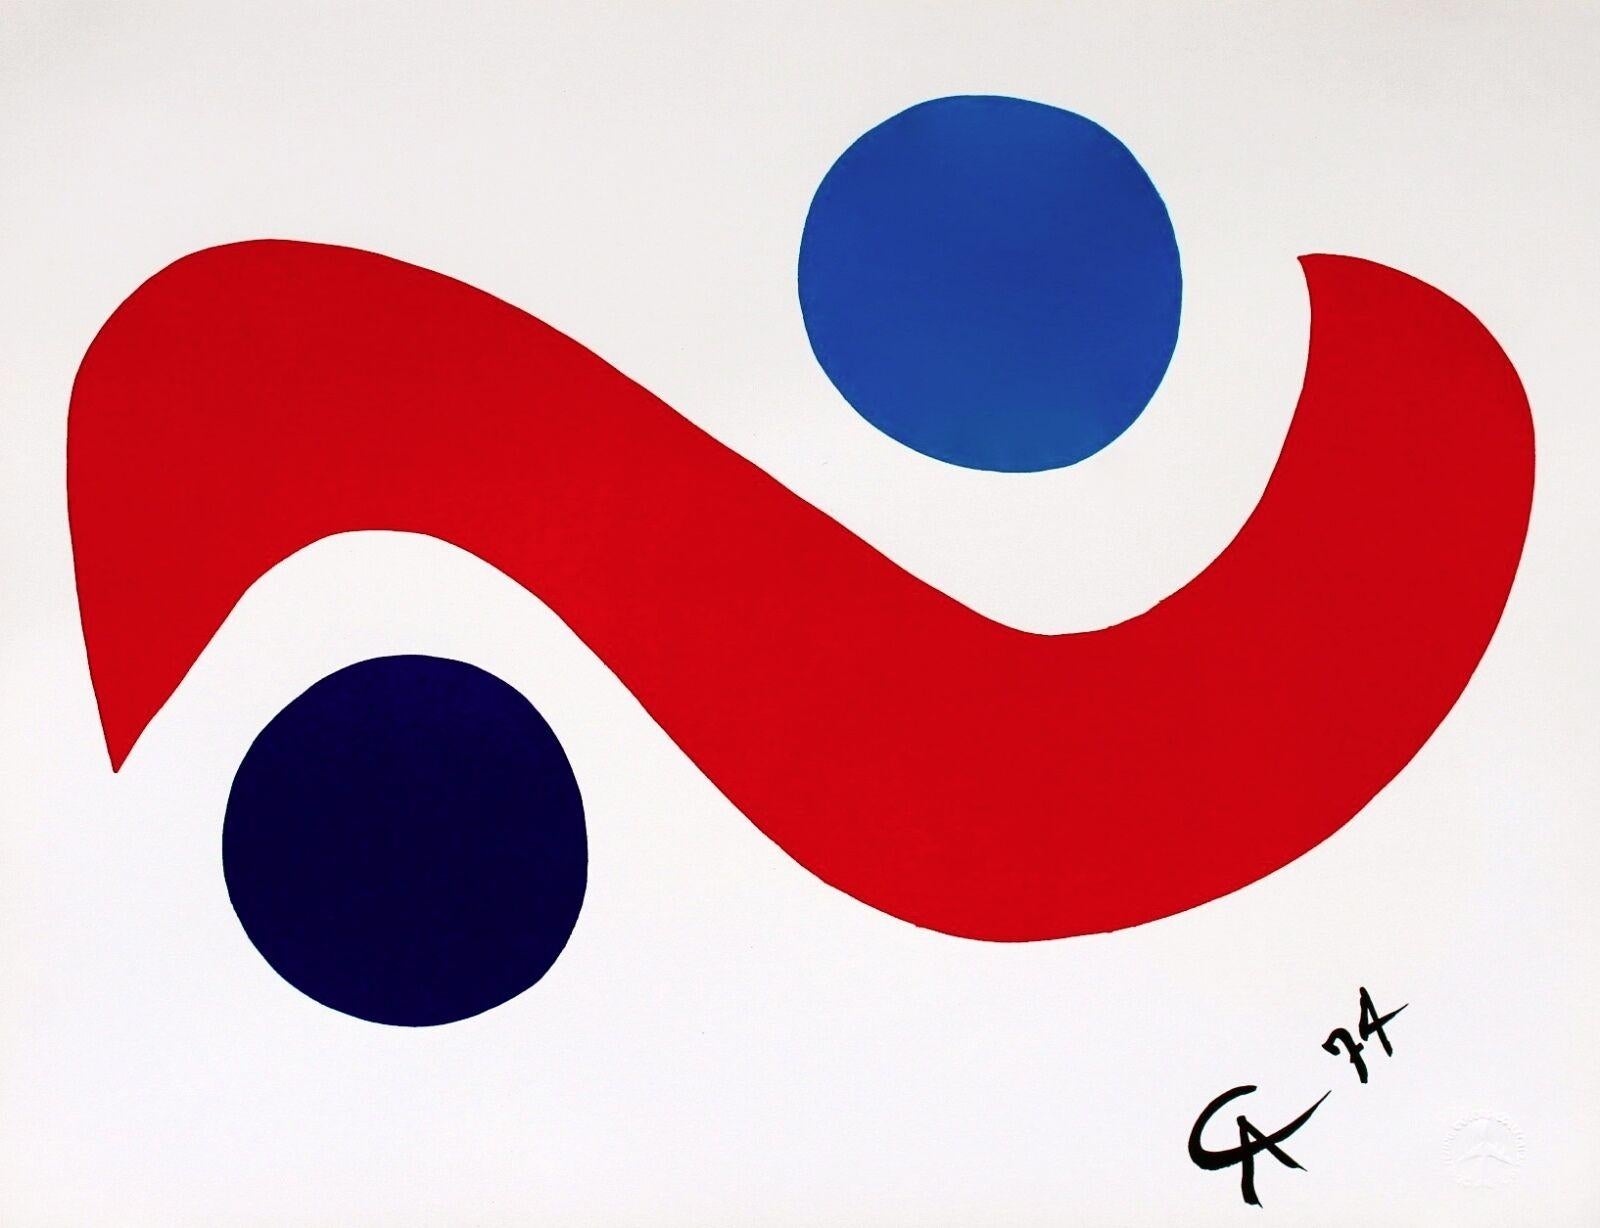 Artistics : Alexander Calder (1898-1976)
Titre : Sky Bird (de la Collection Flying Colors de Braniff International Airways)
Année : 1974
Support : Lithographie sur papier Arches 
Taille : 20 x 26 pouces
Condit : Excellent
Edition : 3,000, plus les